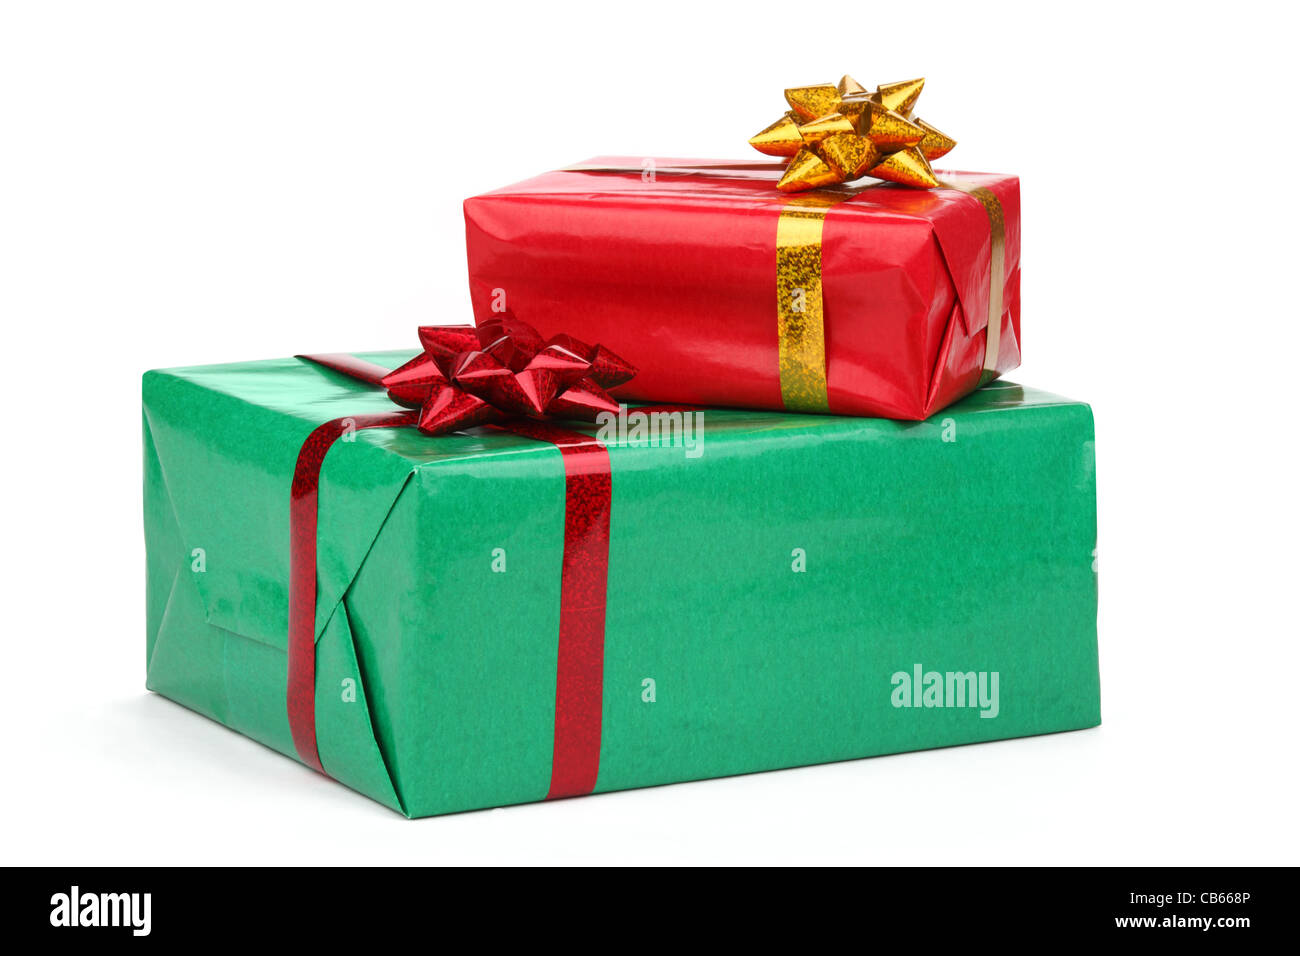 Cajas de regalo fotografías e imágenes de alta resolución - Alamy